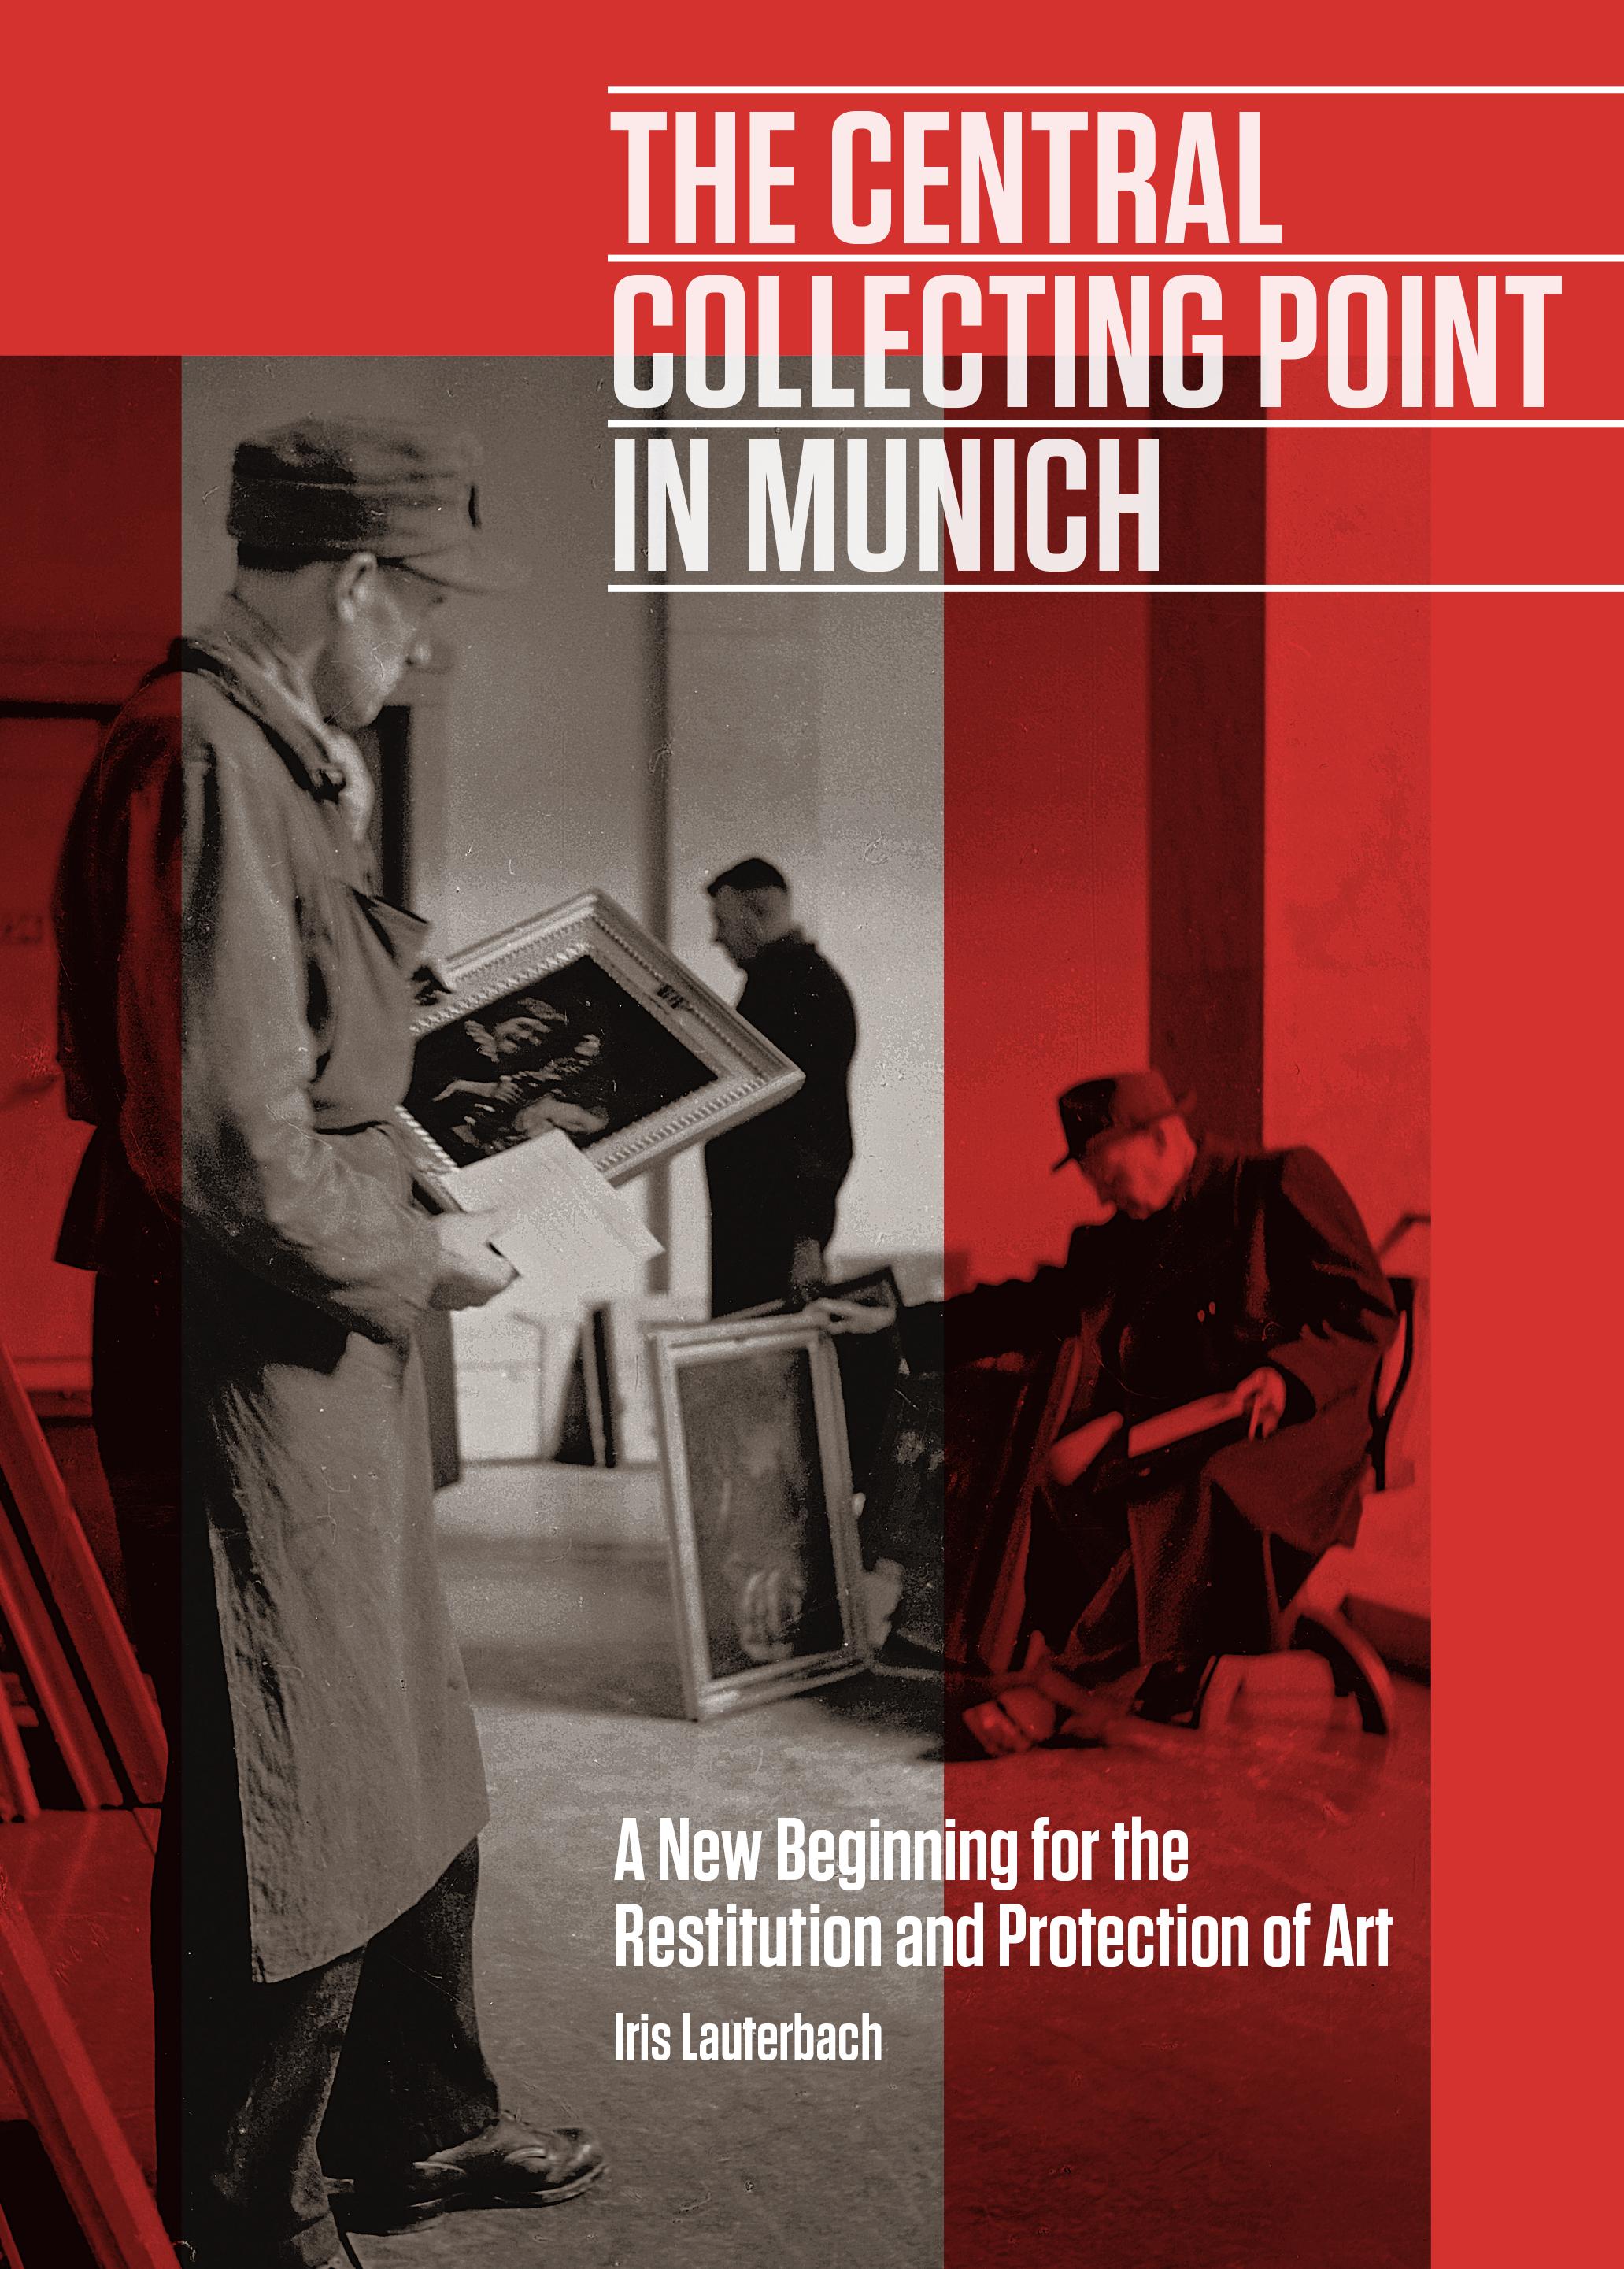 “The Central Collecting Point in Munich” von Iris Lauterbach für die Richard Schlagman Art Book Awards 2019 nominiert